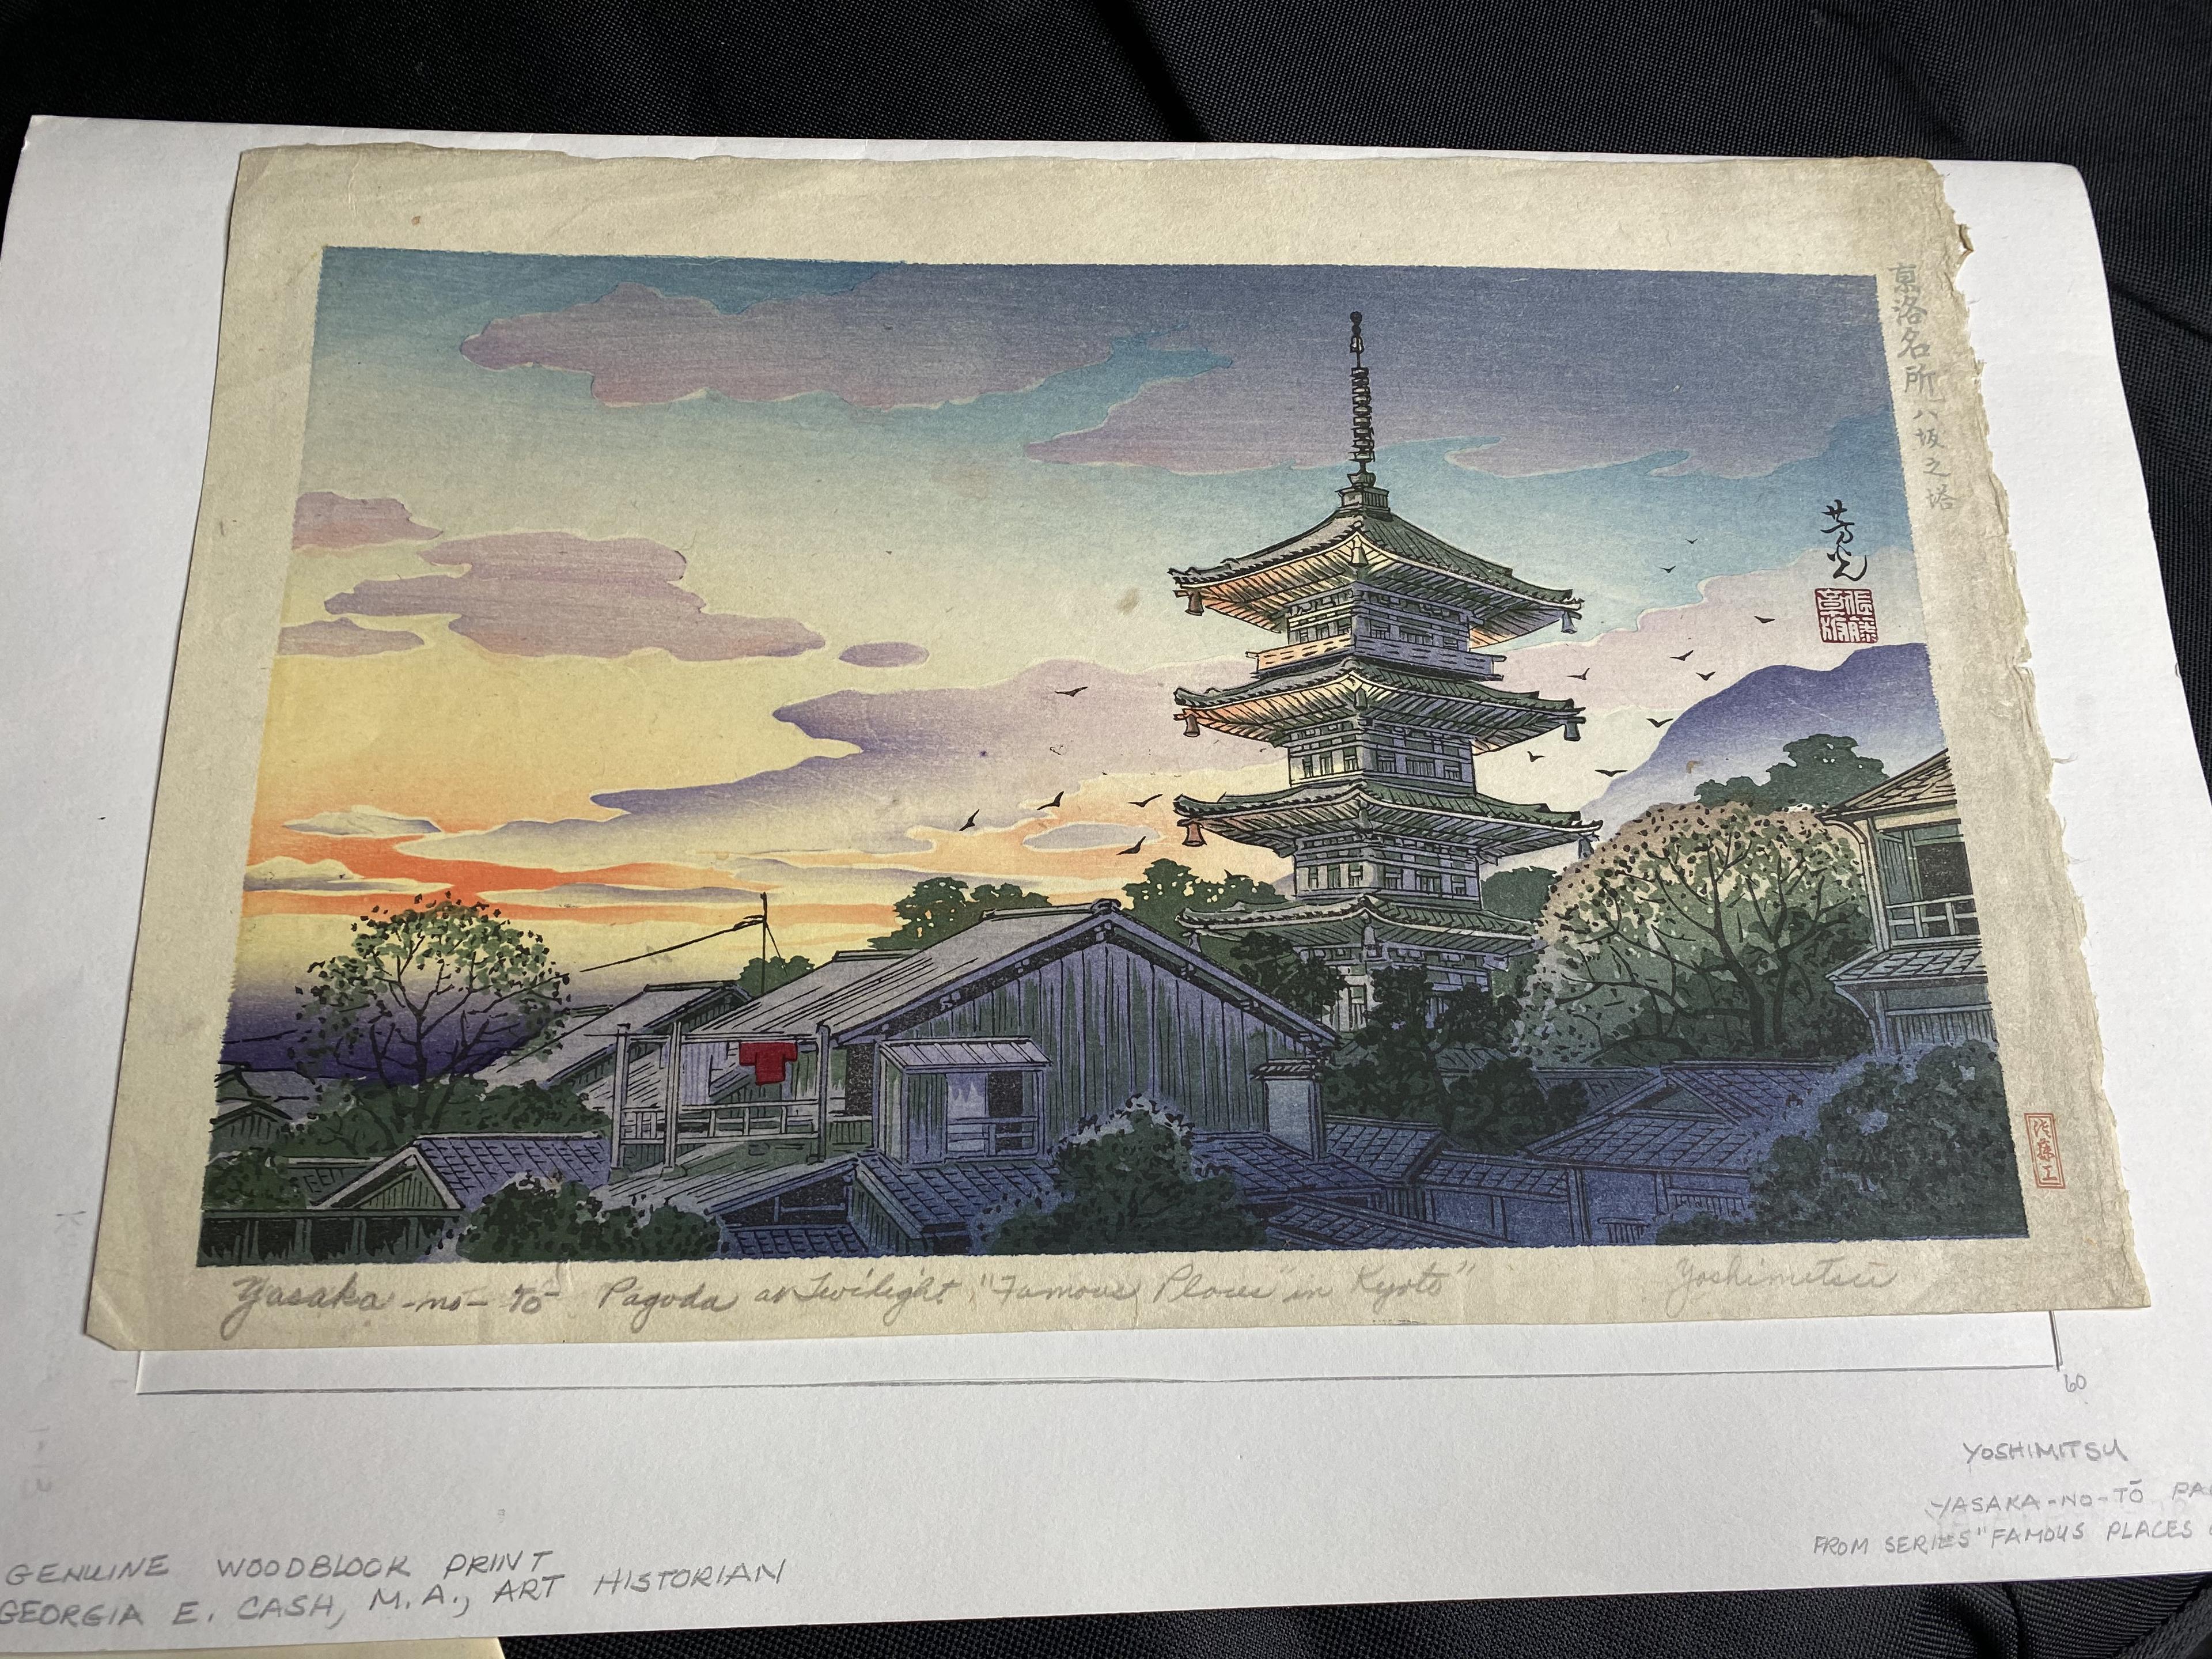 Japanese woodblock print by Nomura Yoshimitsu